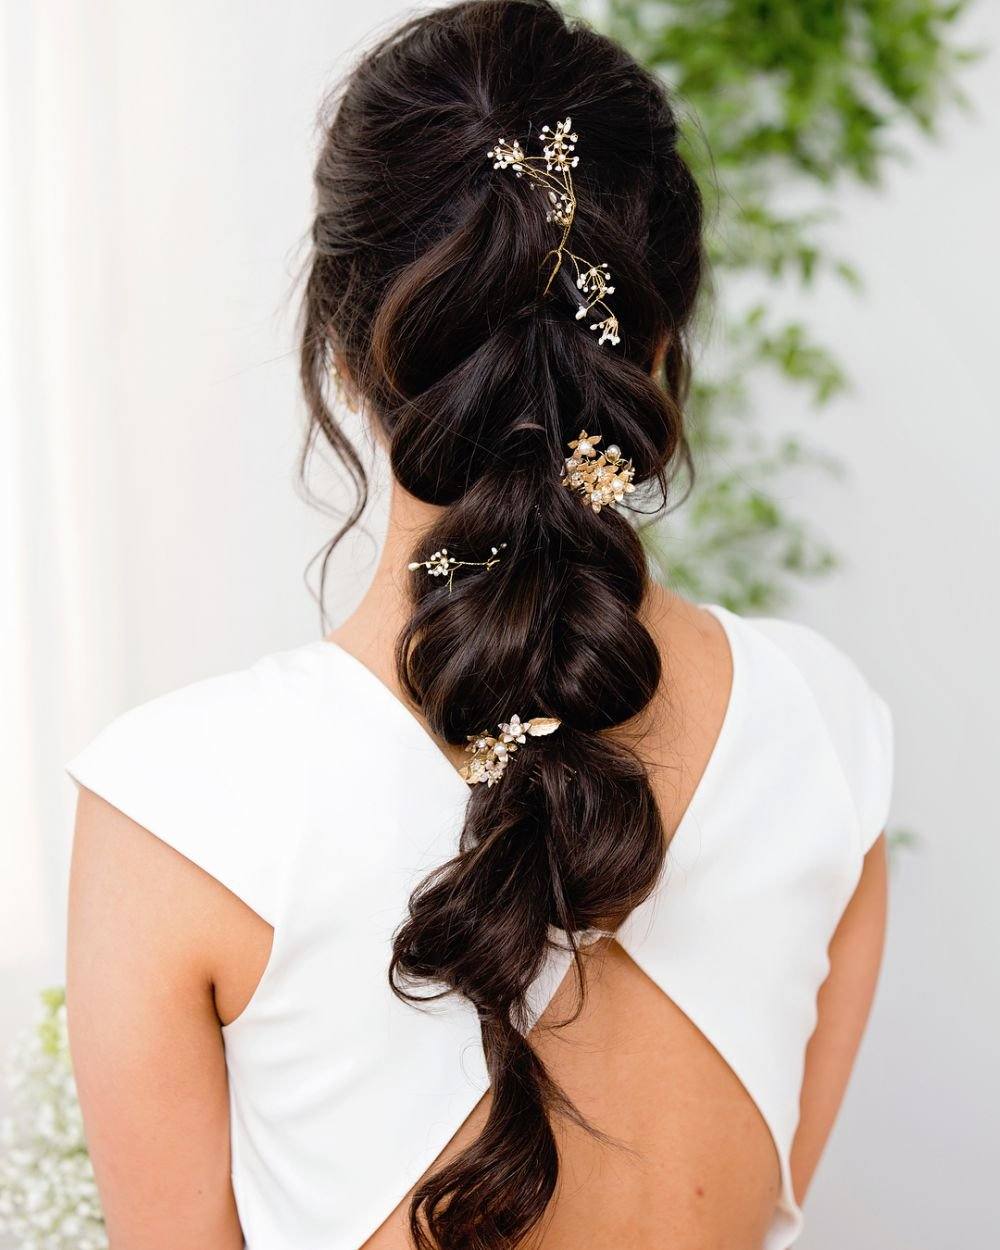 Свадебные прически на короткие волосы: варианты укладок и аксессуаров к ним